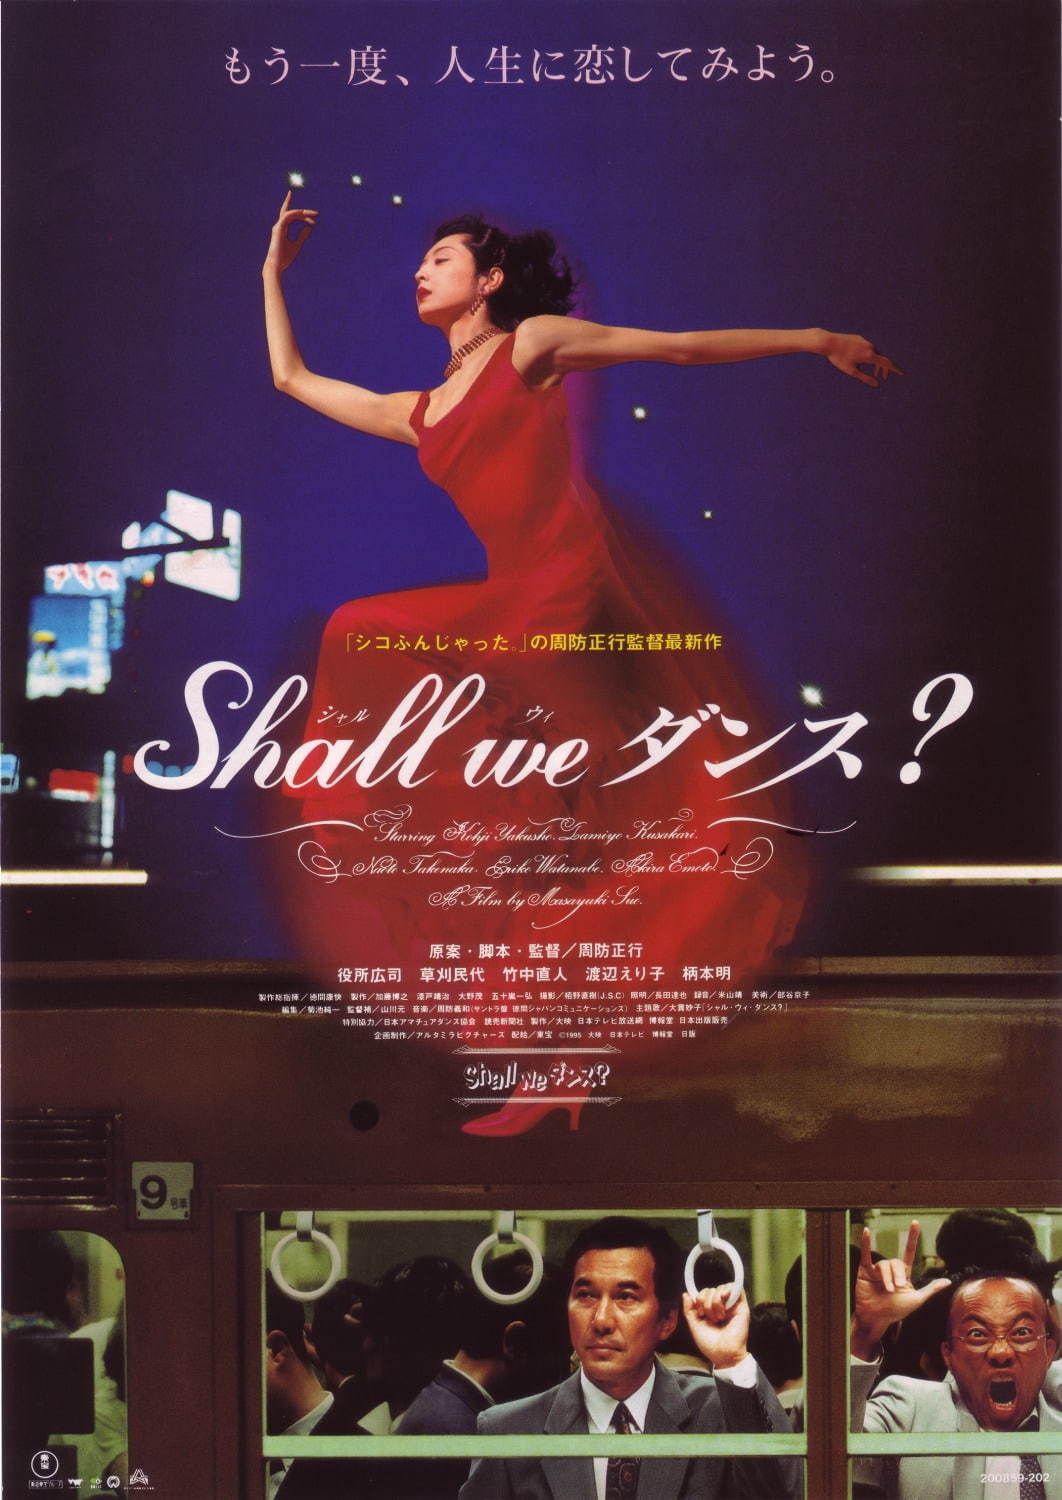 映画『Shall we ダンス？』より
©1995 KADOKAWA 日本テレビ 博報堂DYメディアパートナーズ 日販